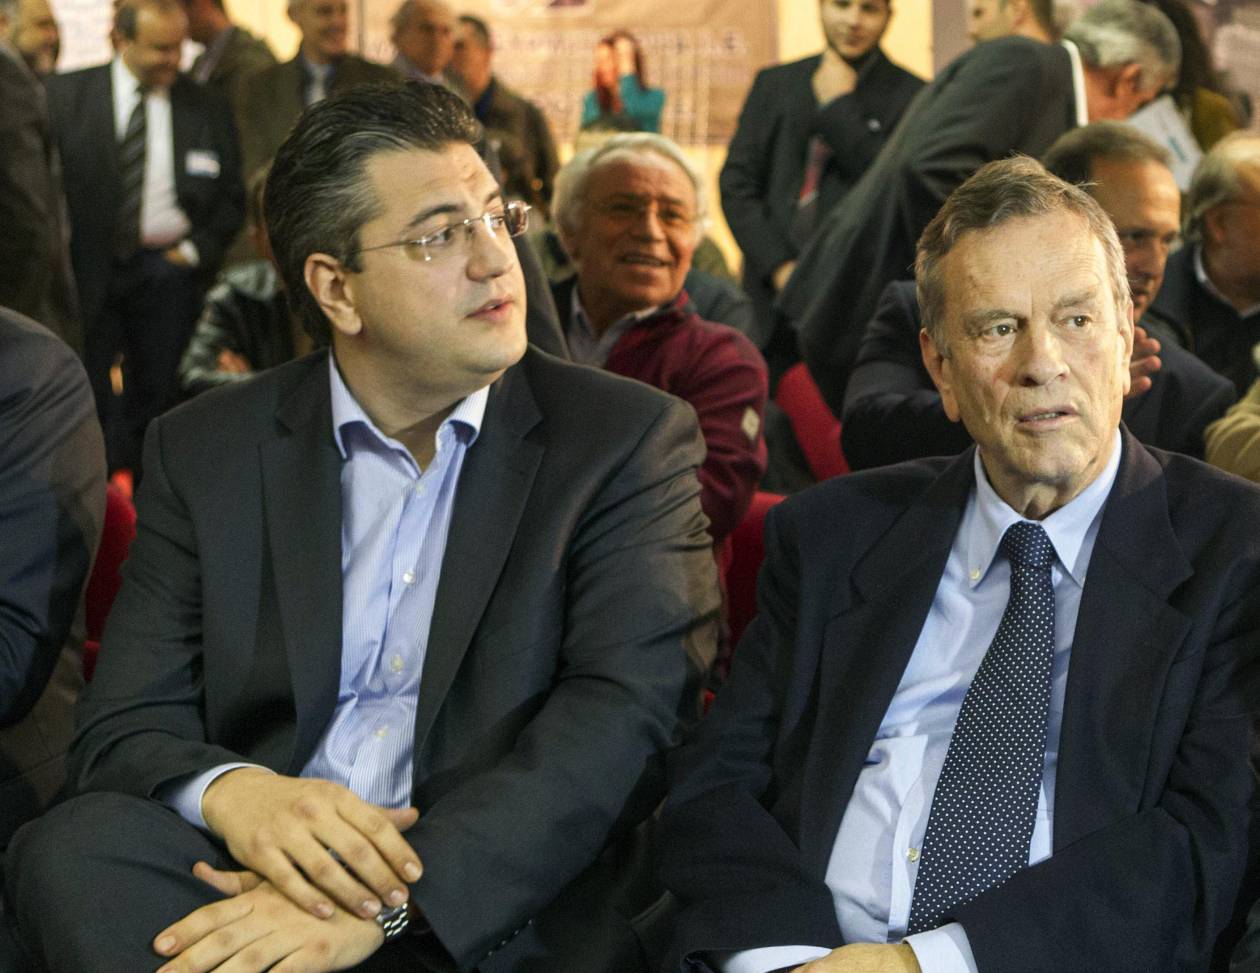 Εκλογές 2014 - Μπόλαρης: Τζιτζικώστας και Ιωαννίδης αποφεύγουν τον δημόσιο διάλογο